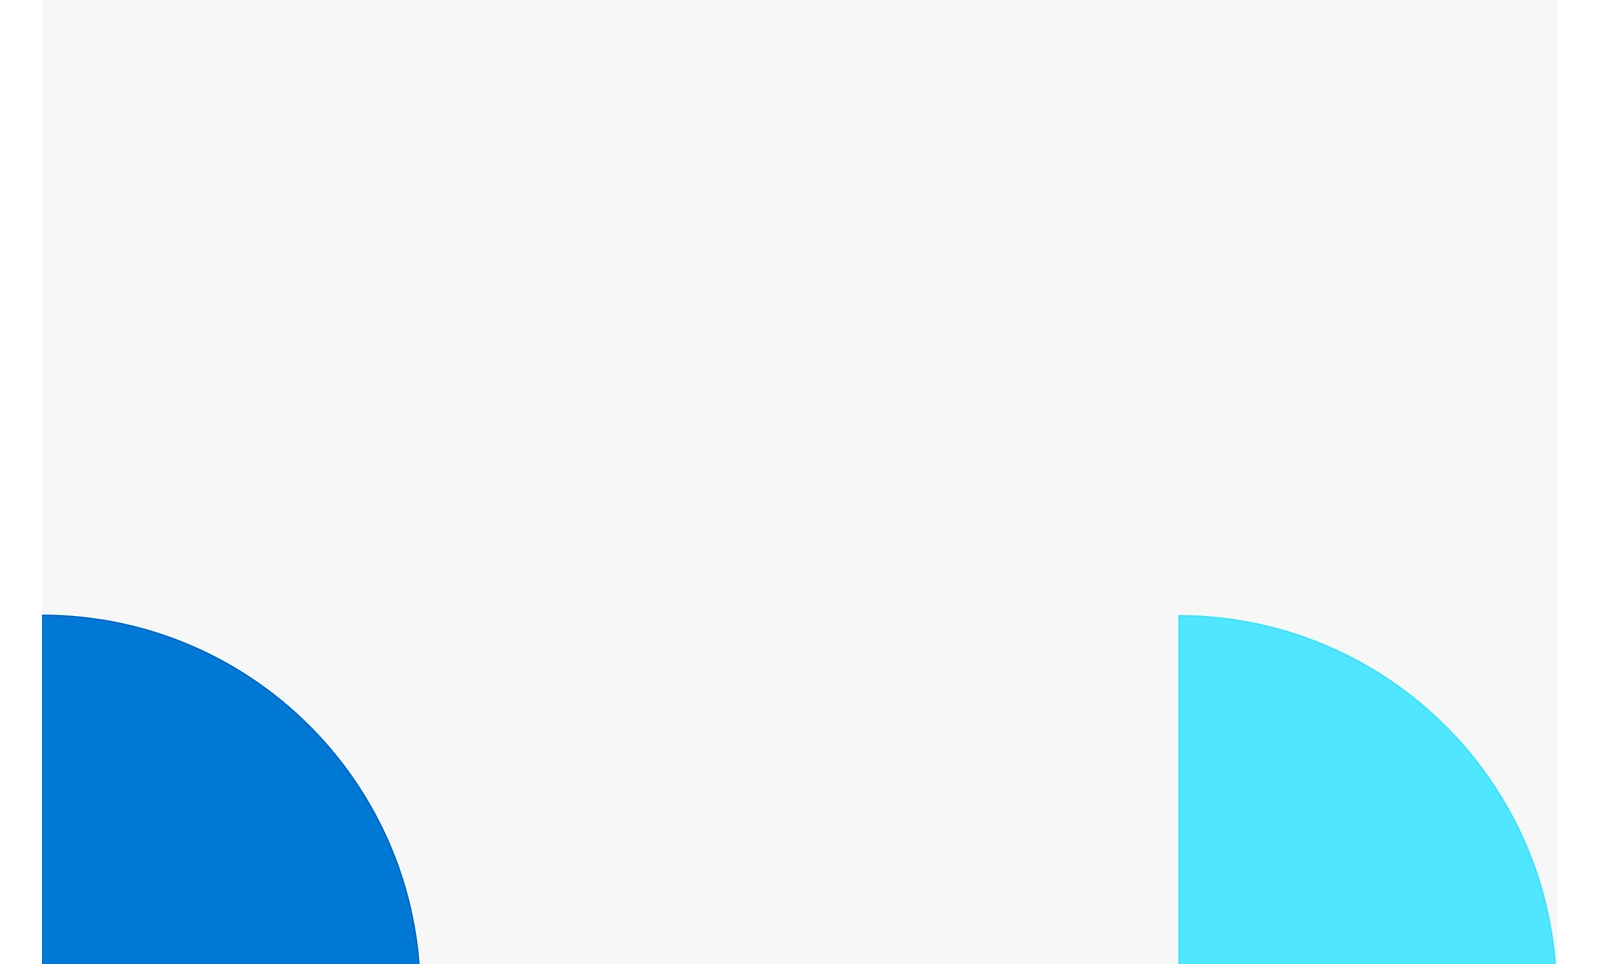 白い背景を持つ 2 つの重なり合う円形の図形。1 つは左側に青、右側は明るい青です。